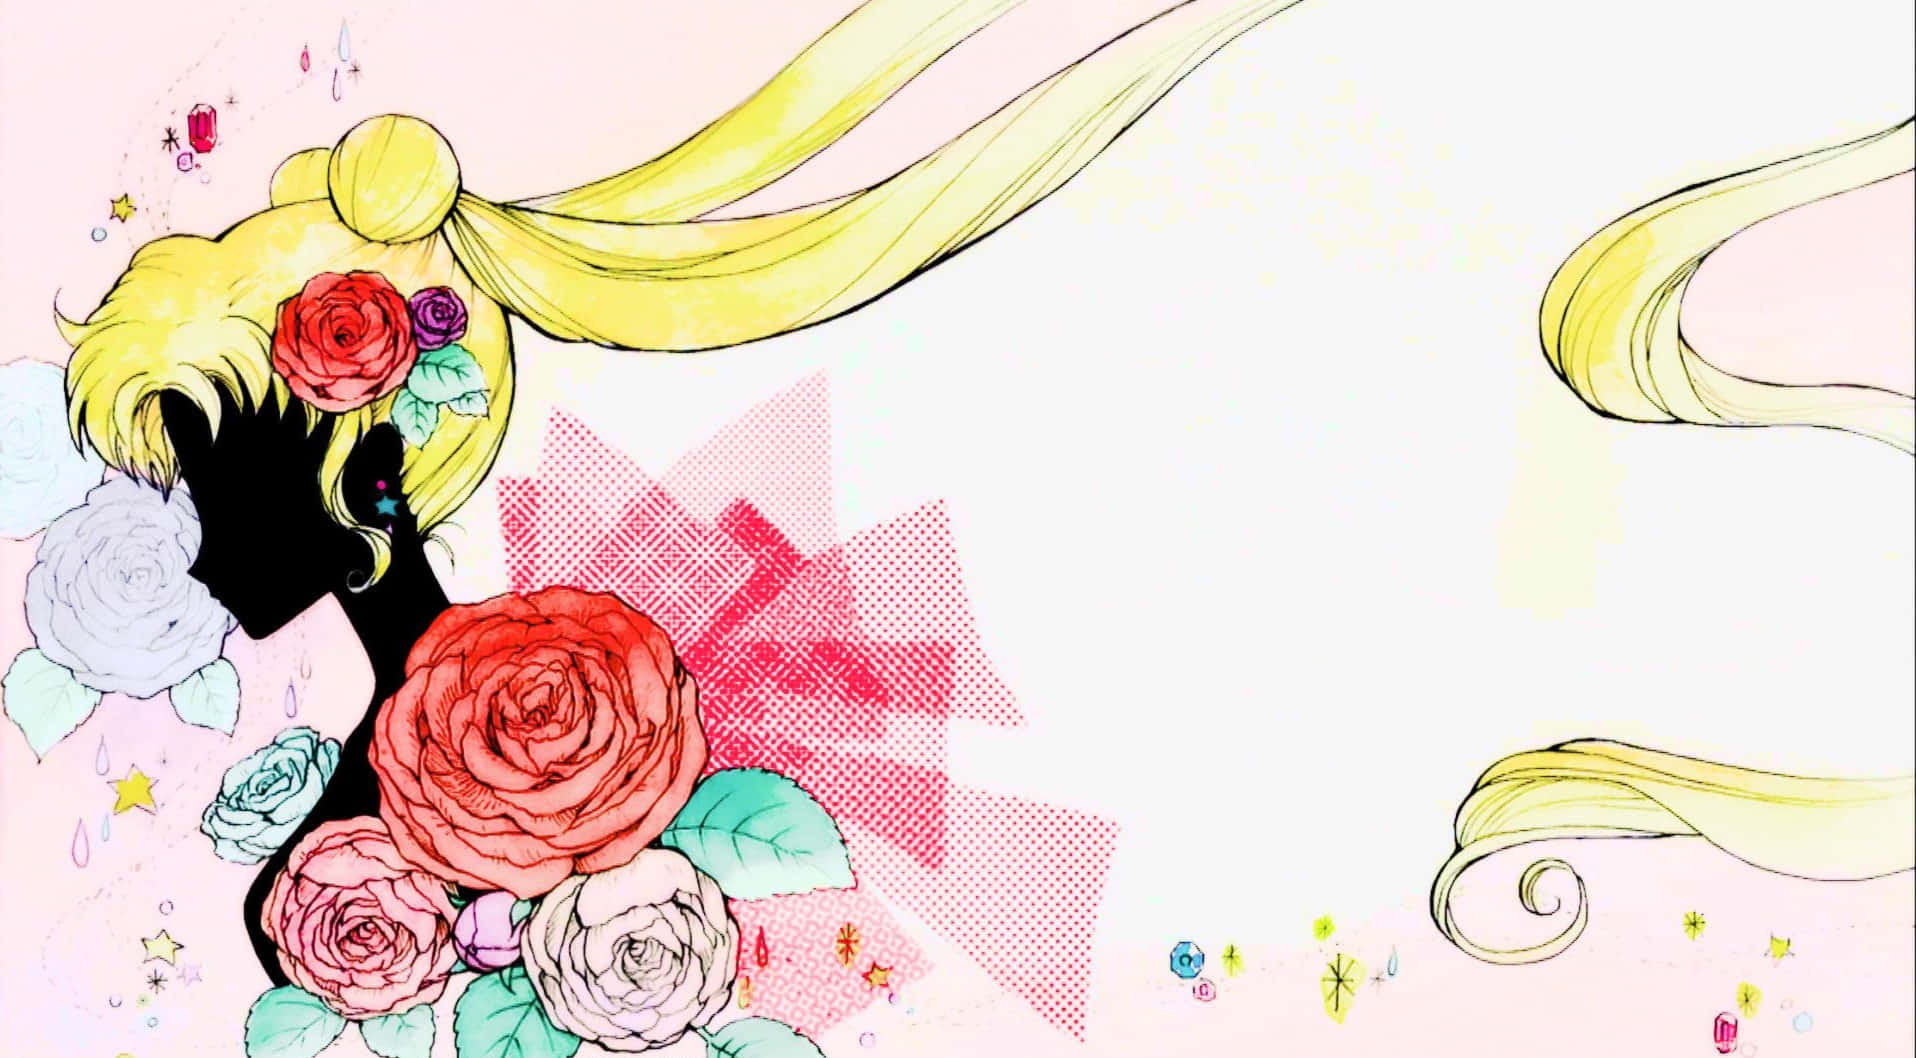 Sentitila Potenza Di Sailor Moon Ed Esplora L'estetica Affascinante Di Questo Leggendario Anime. Sfondo